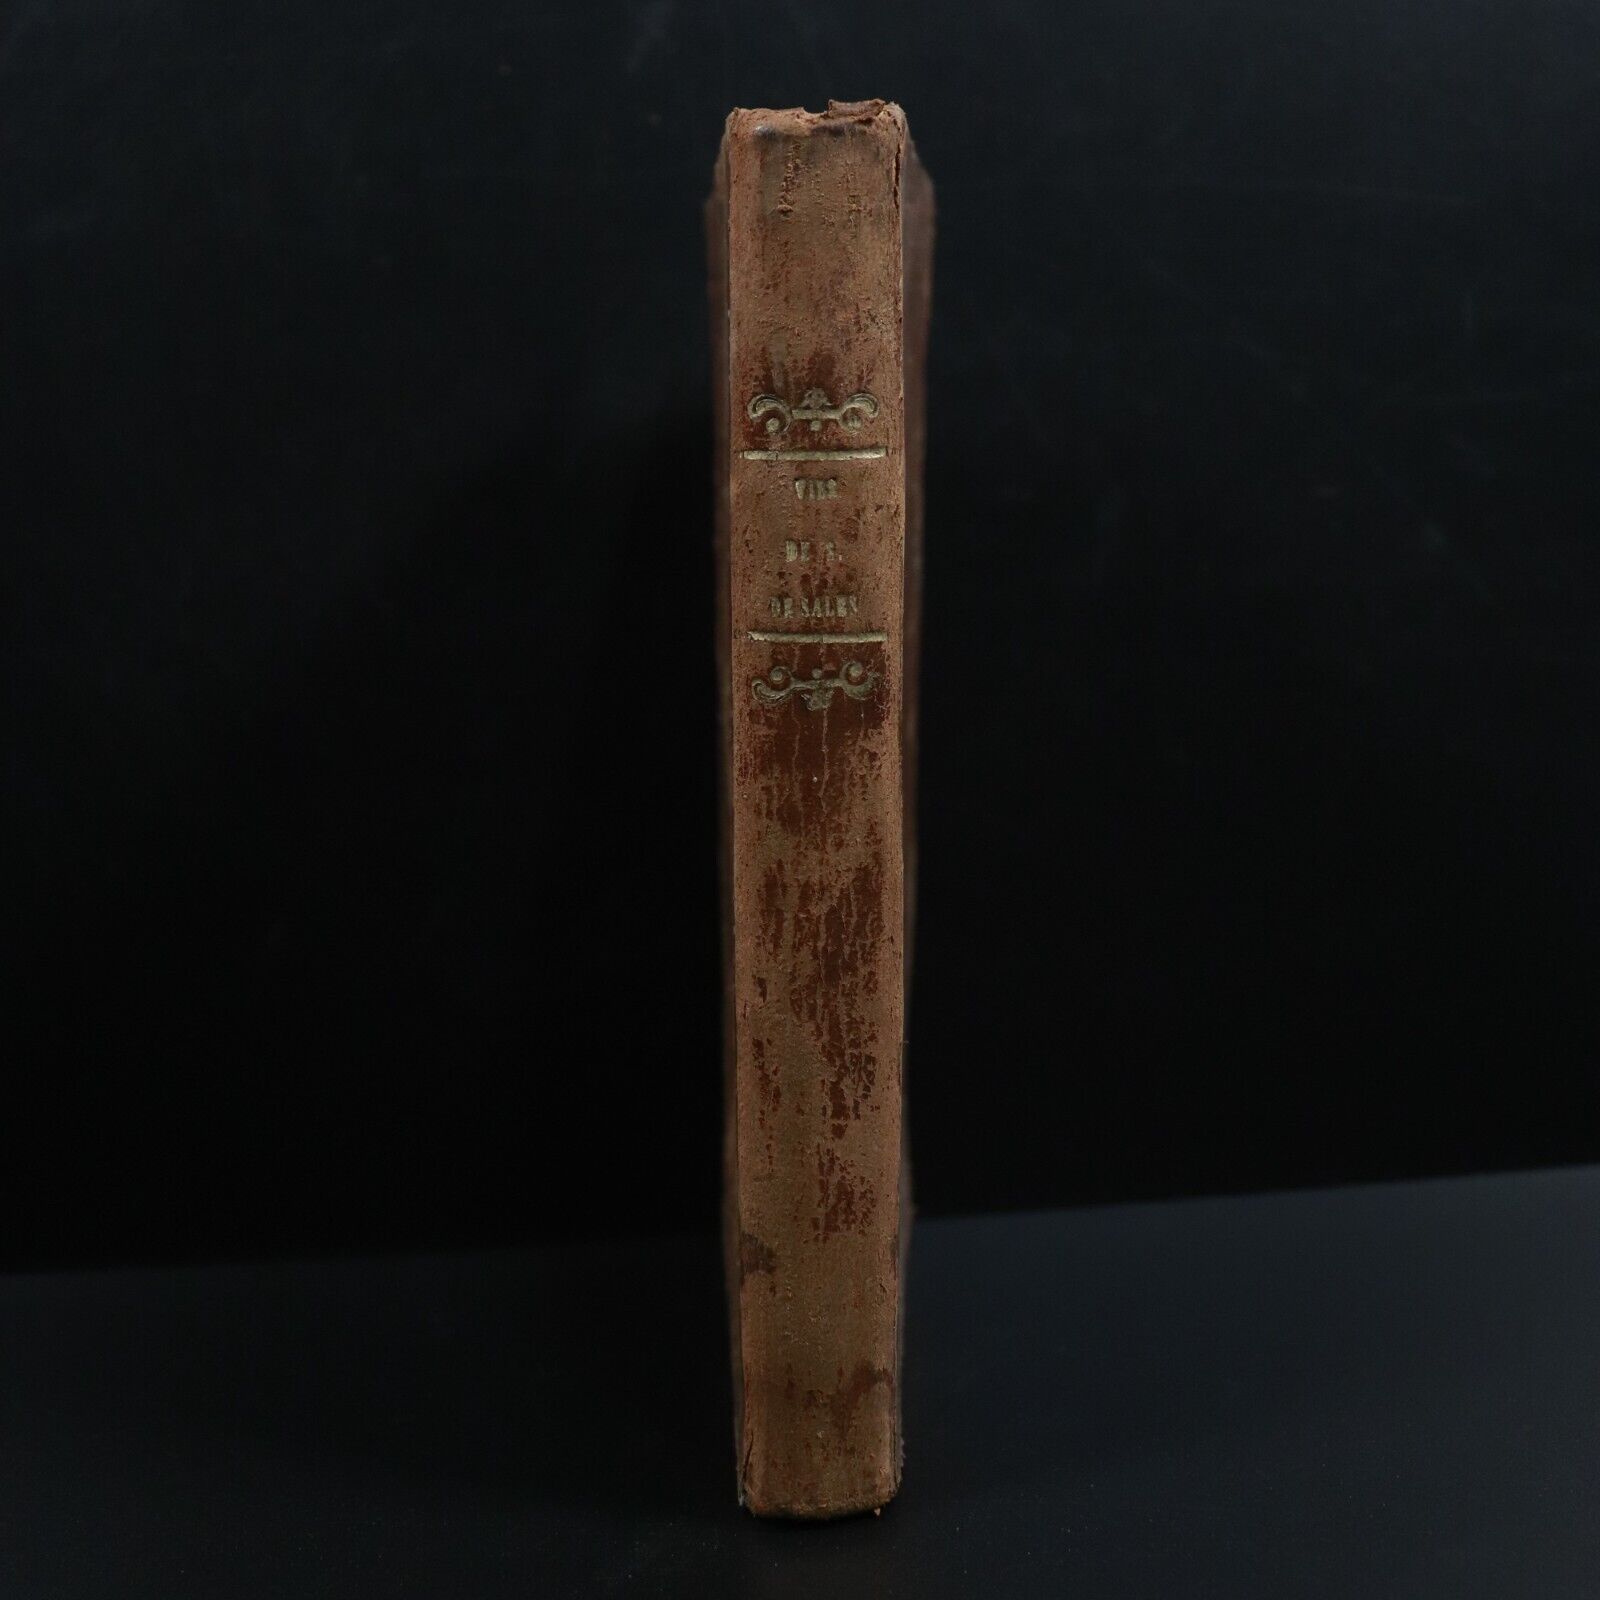 1852 Vie de Saint-François de Sales Antiquarian French Religious History Book